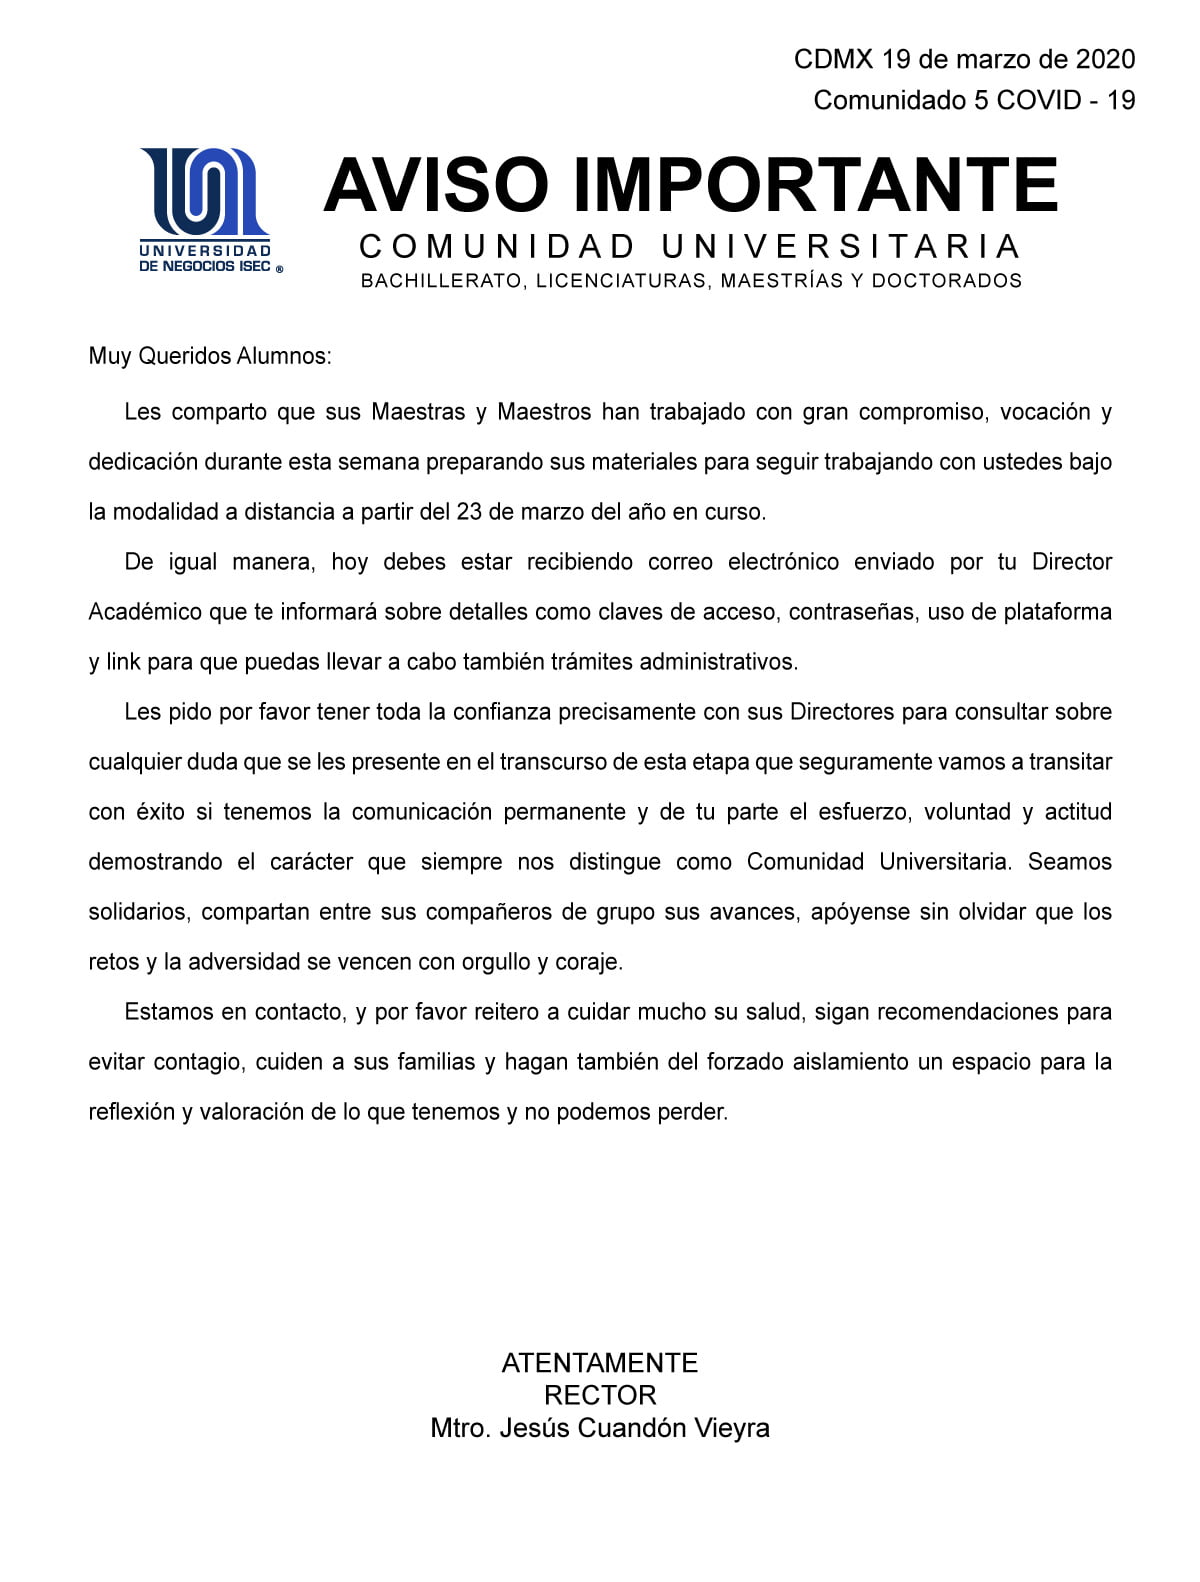 Universidad de Negocios ISEC - Comunicado del 19 marzo sobre COVID-19